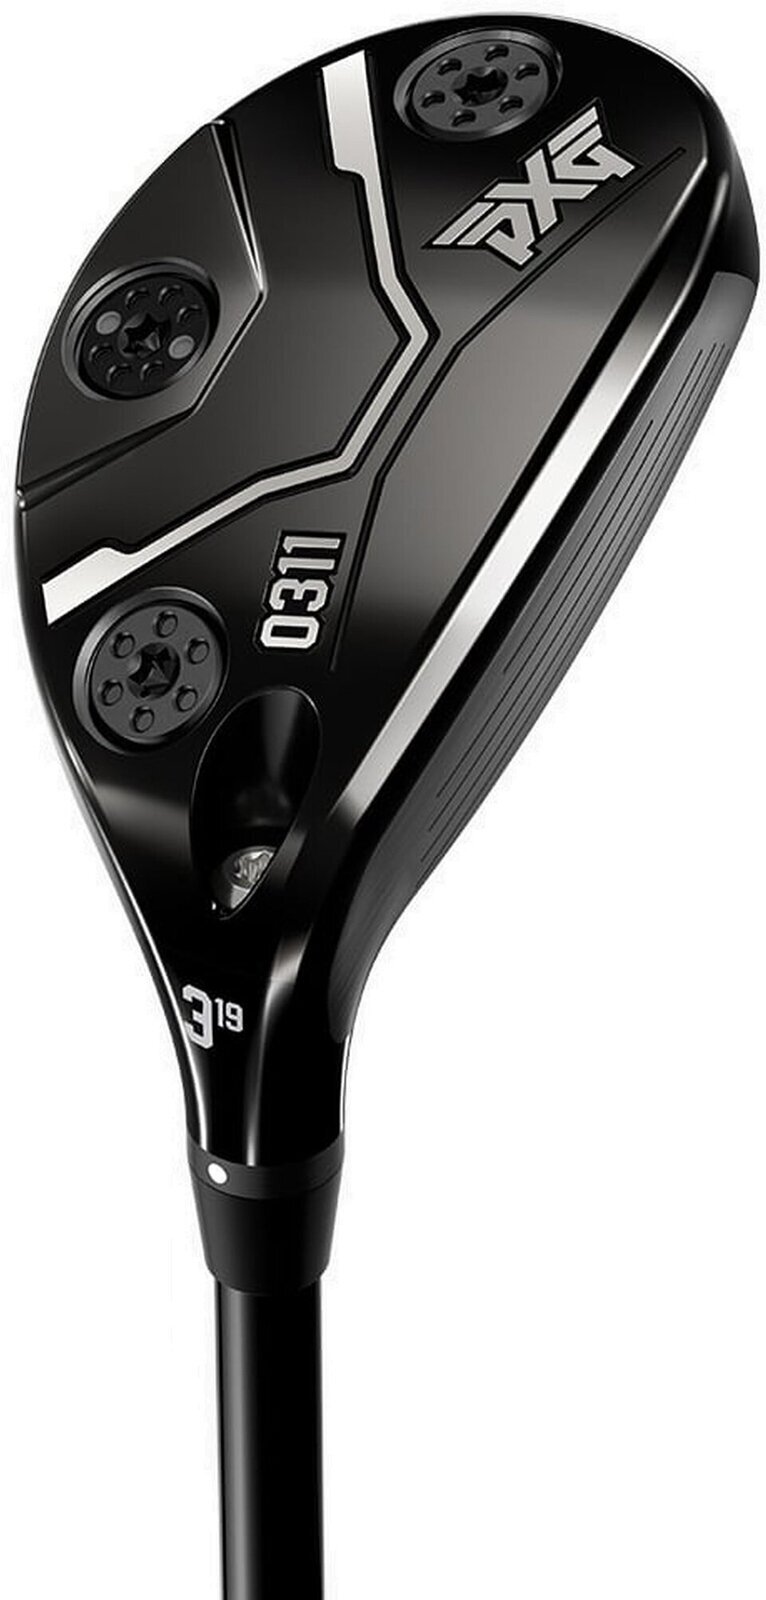 Club de golf - hybride PXG Black Ops 0311 Club de golf - hybride Main droite 22° Stiff